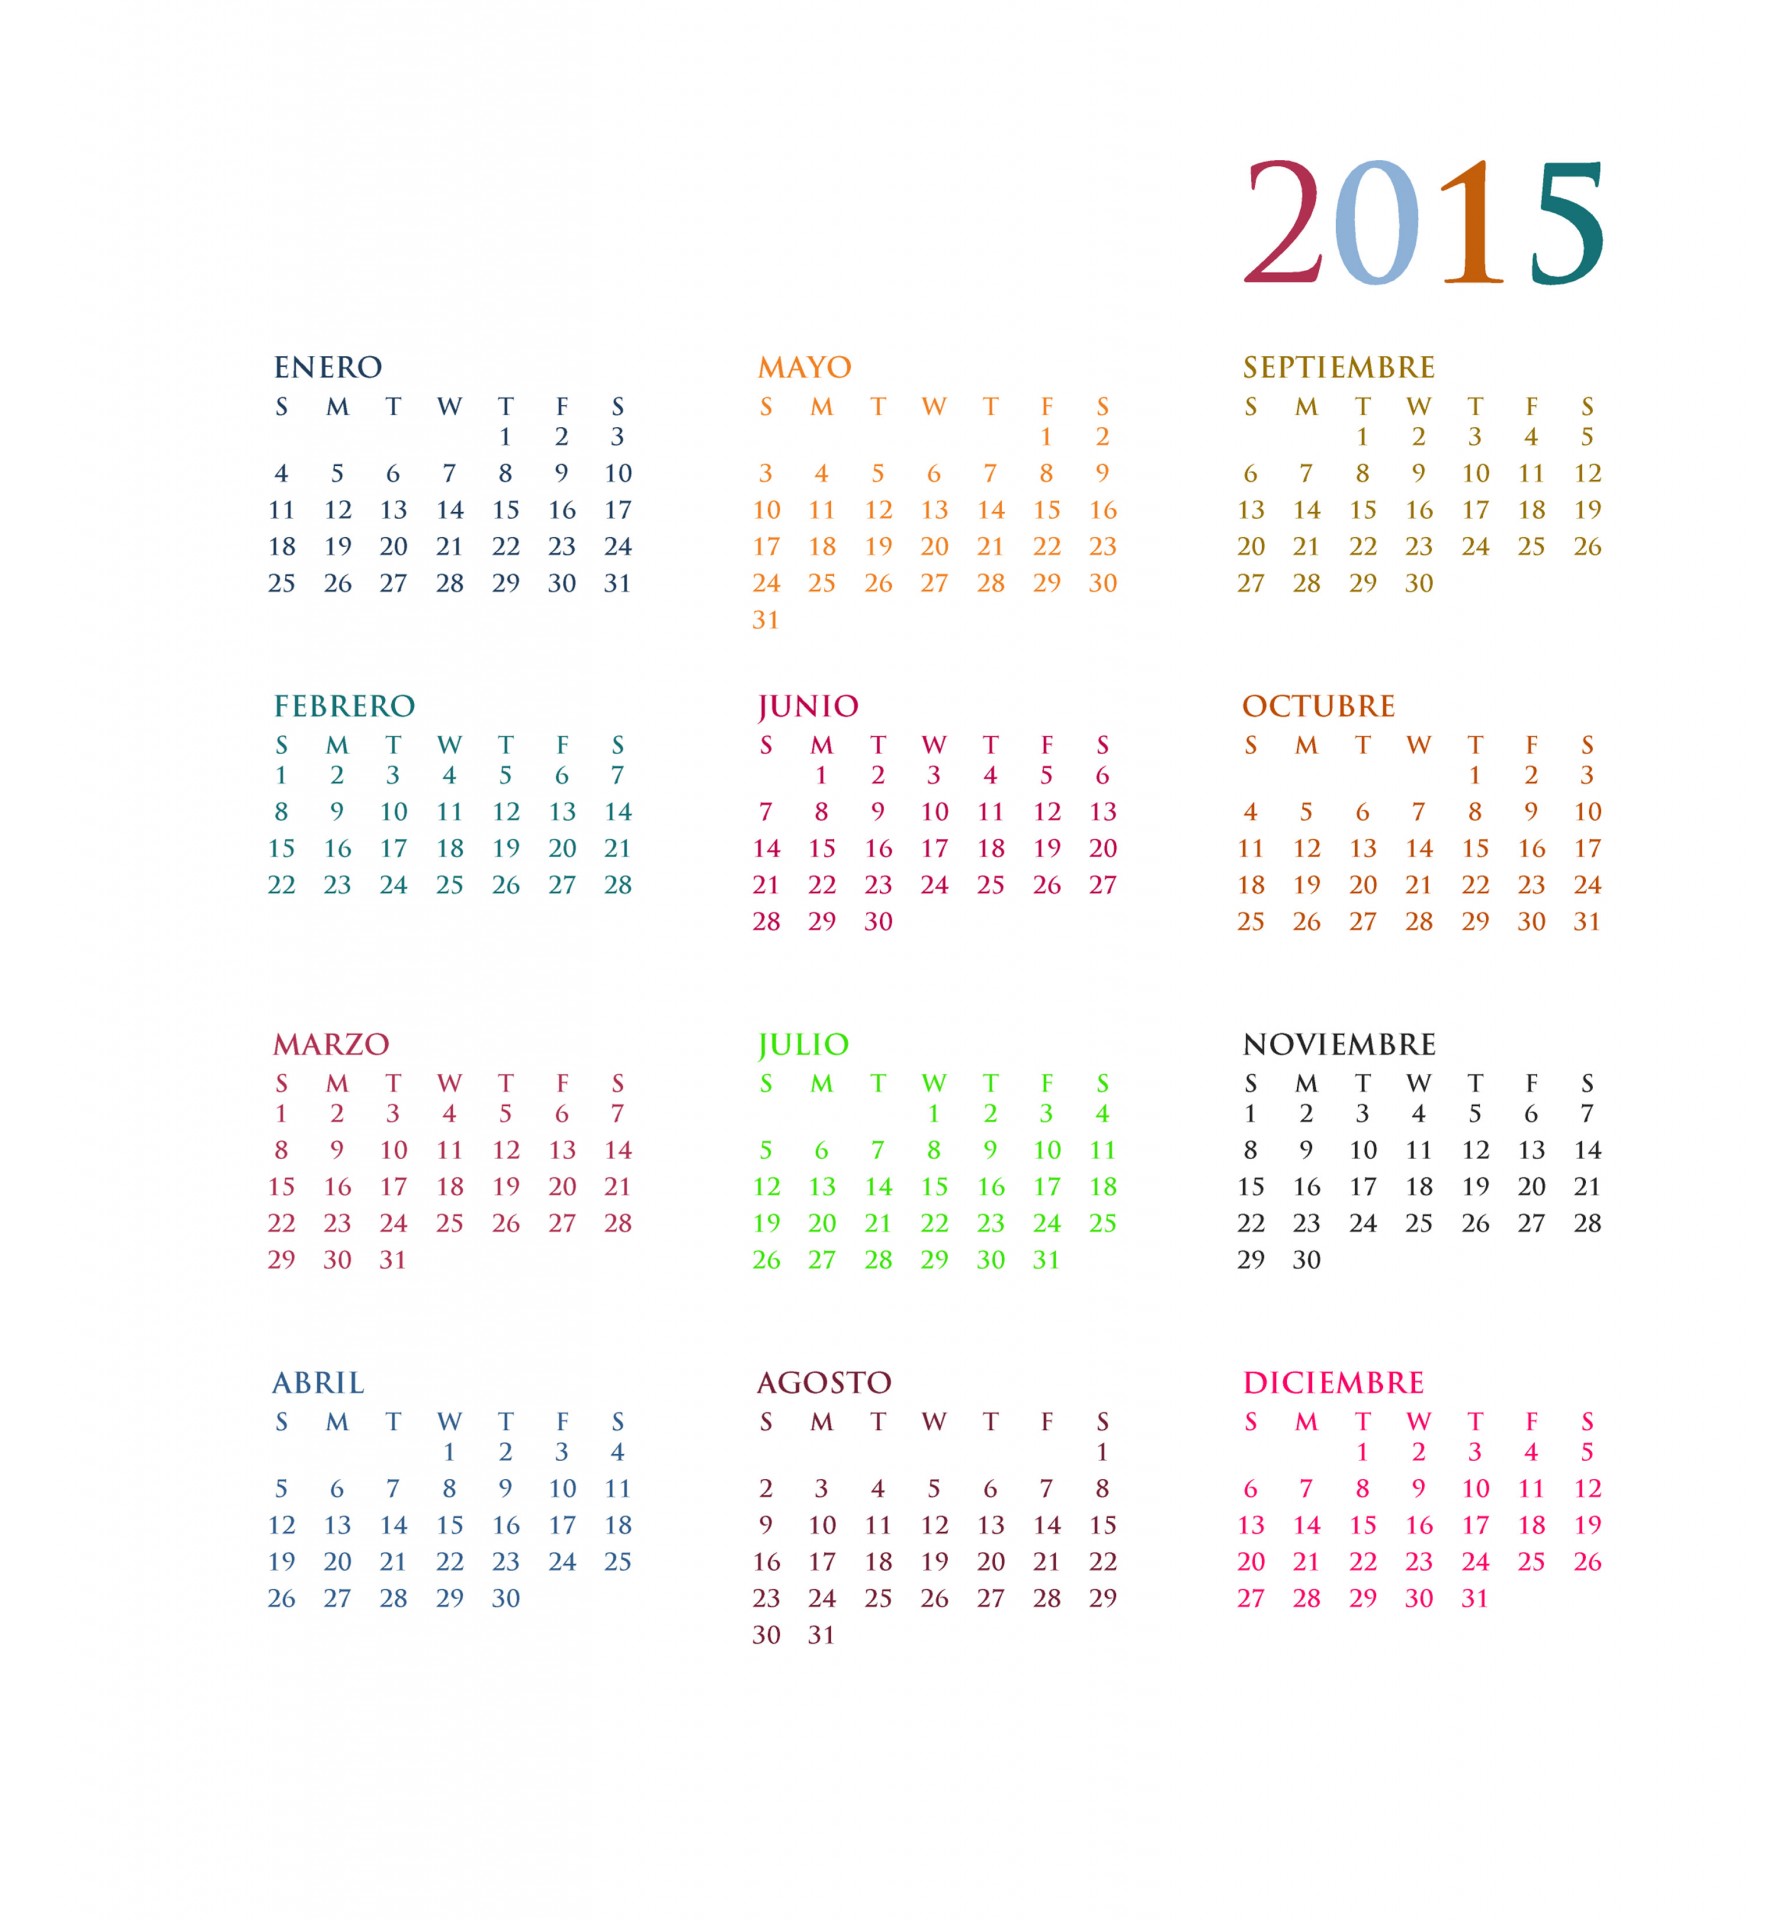 2015 calendrier annuel en espagnol